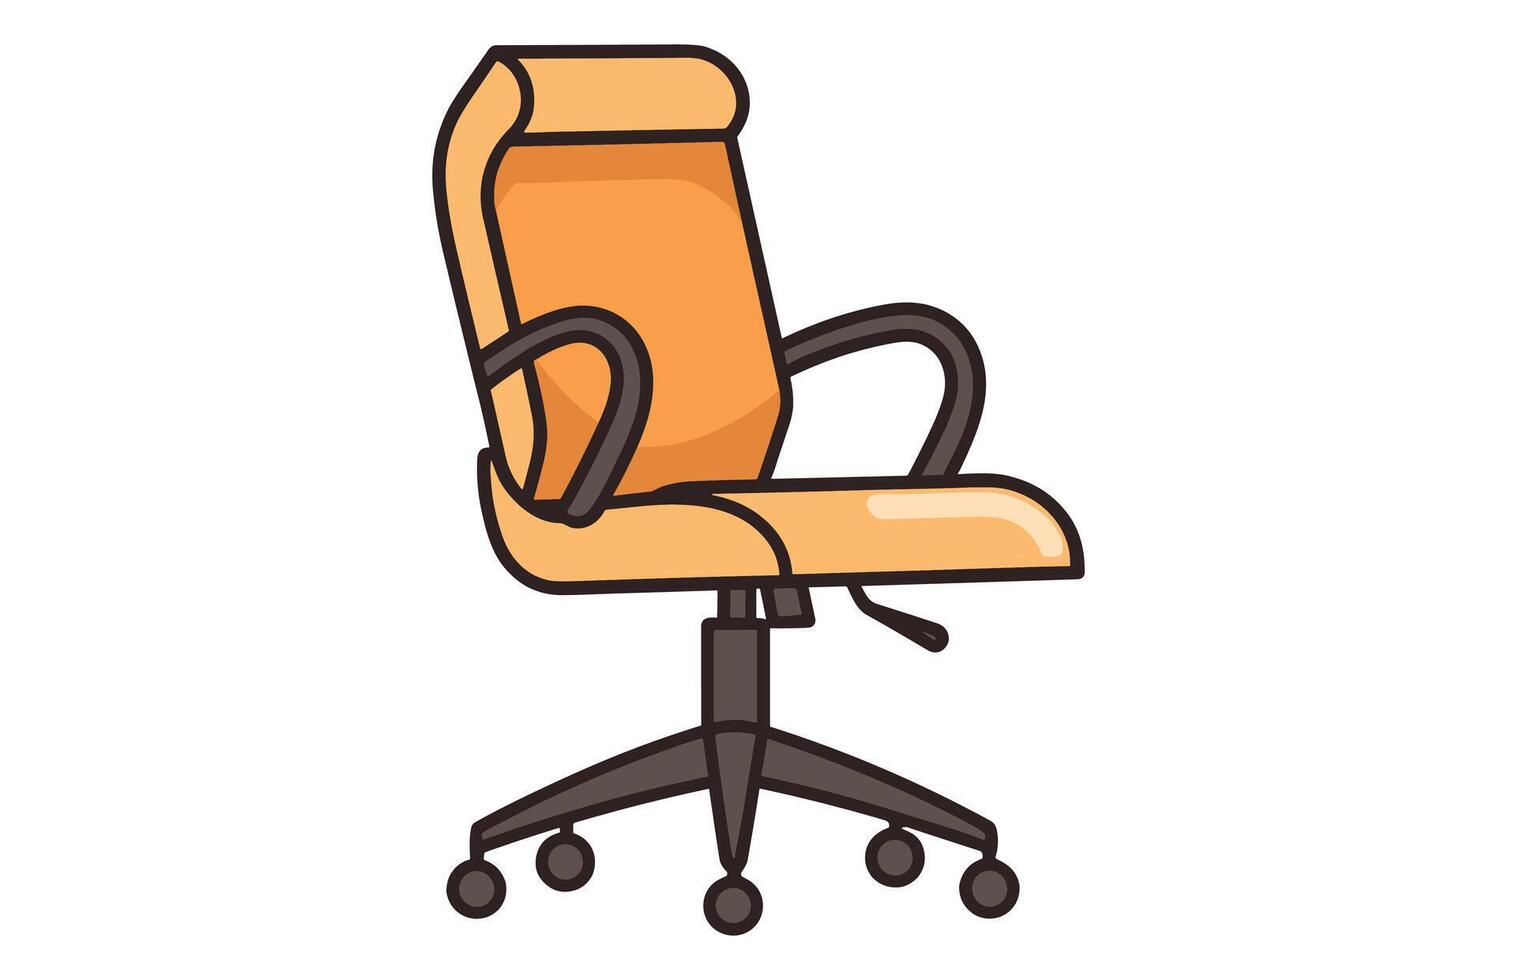 Bureau chaises vecteur illustration, Bureau chaise ou bureau chaise dans divers points de vue illustration